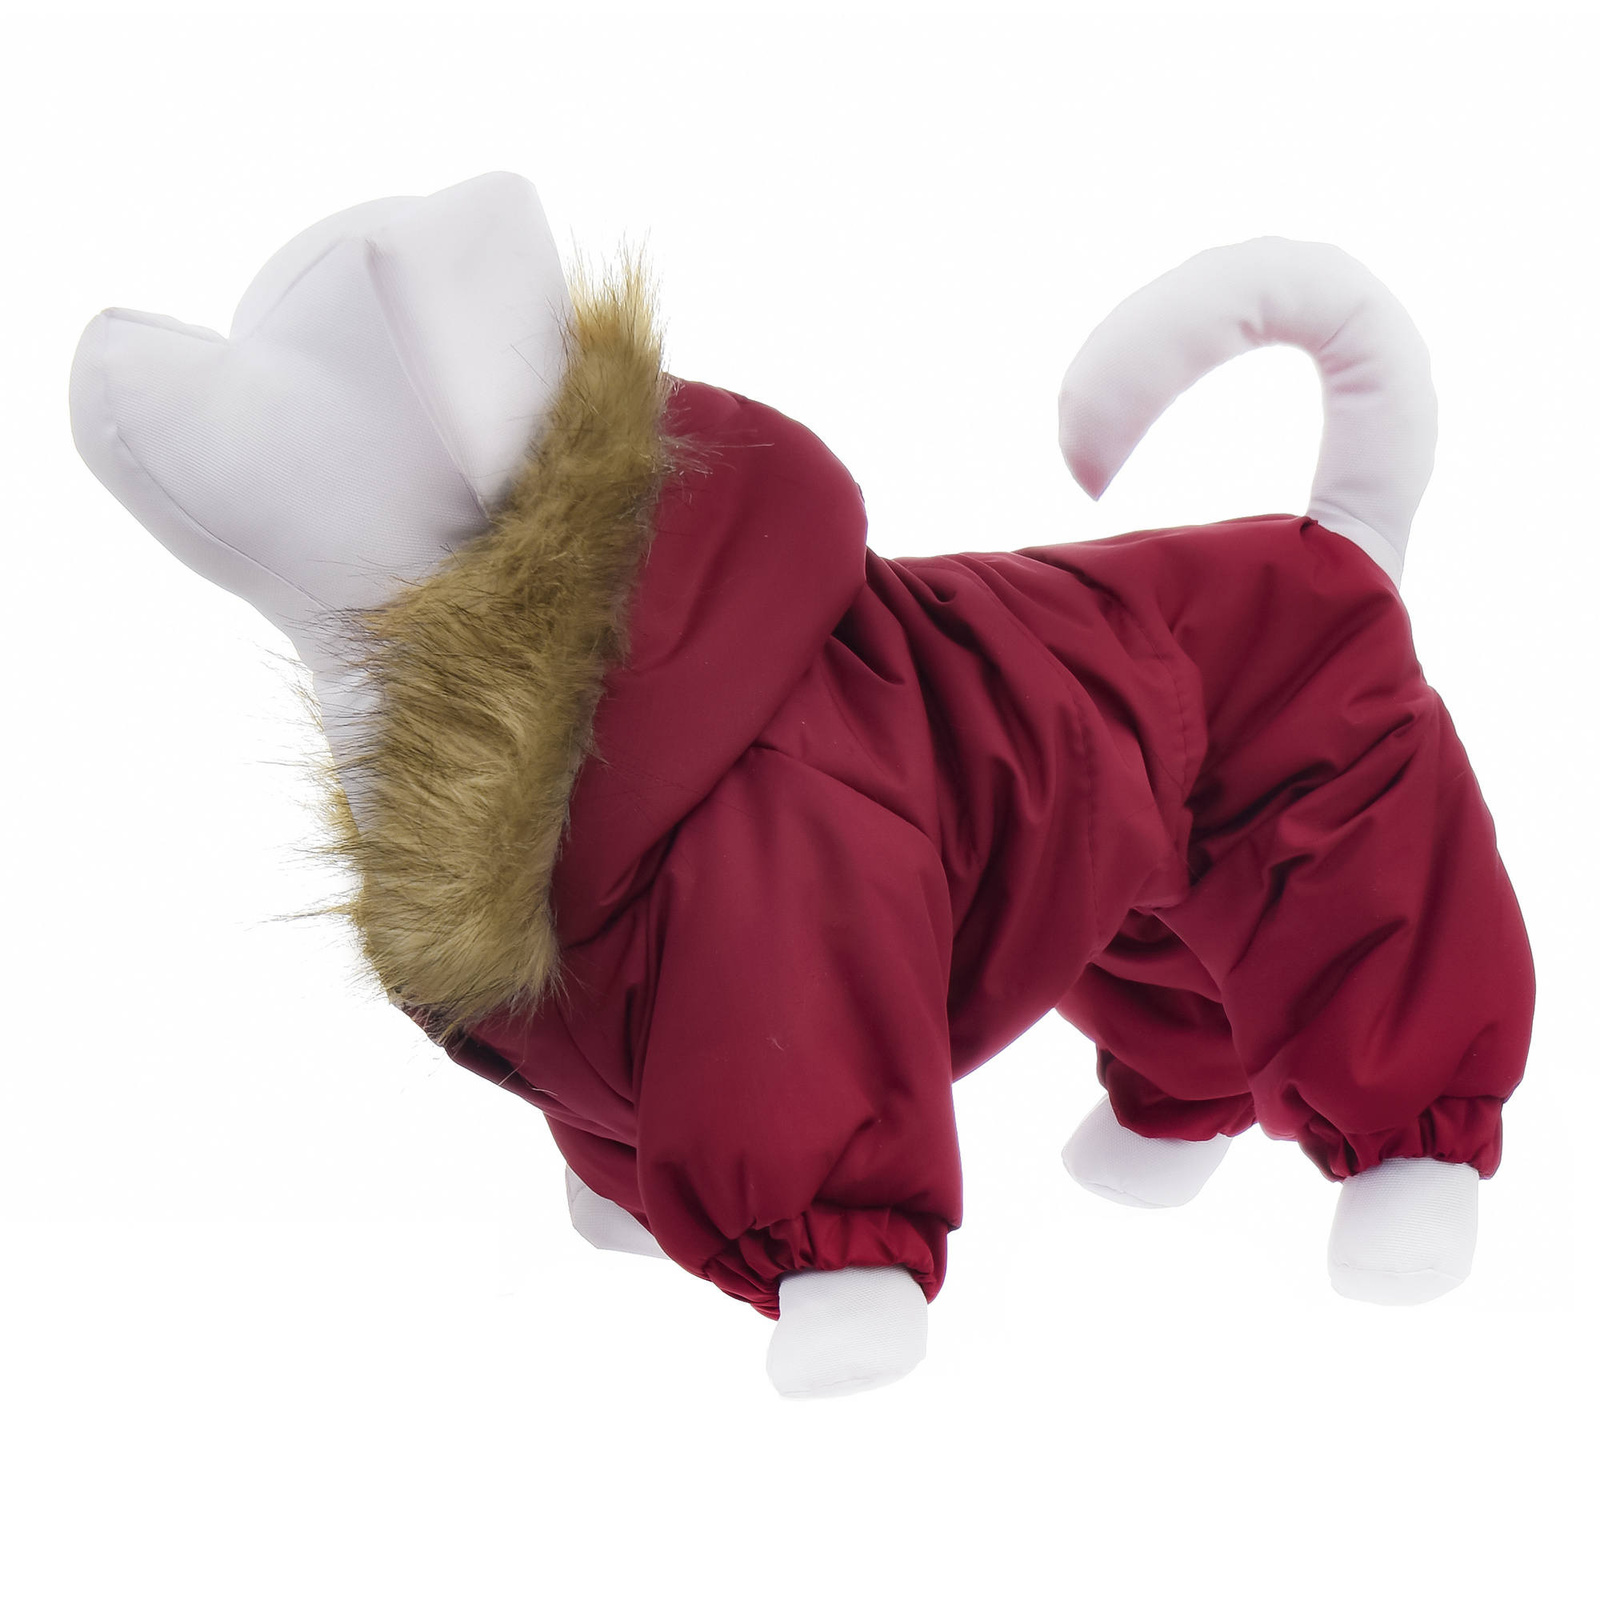 Yami-Yami одежда комбинезон для собак с капюшоном, на меховой подкладке, бордовый (XS)